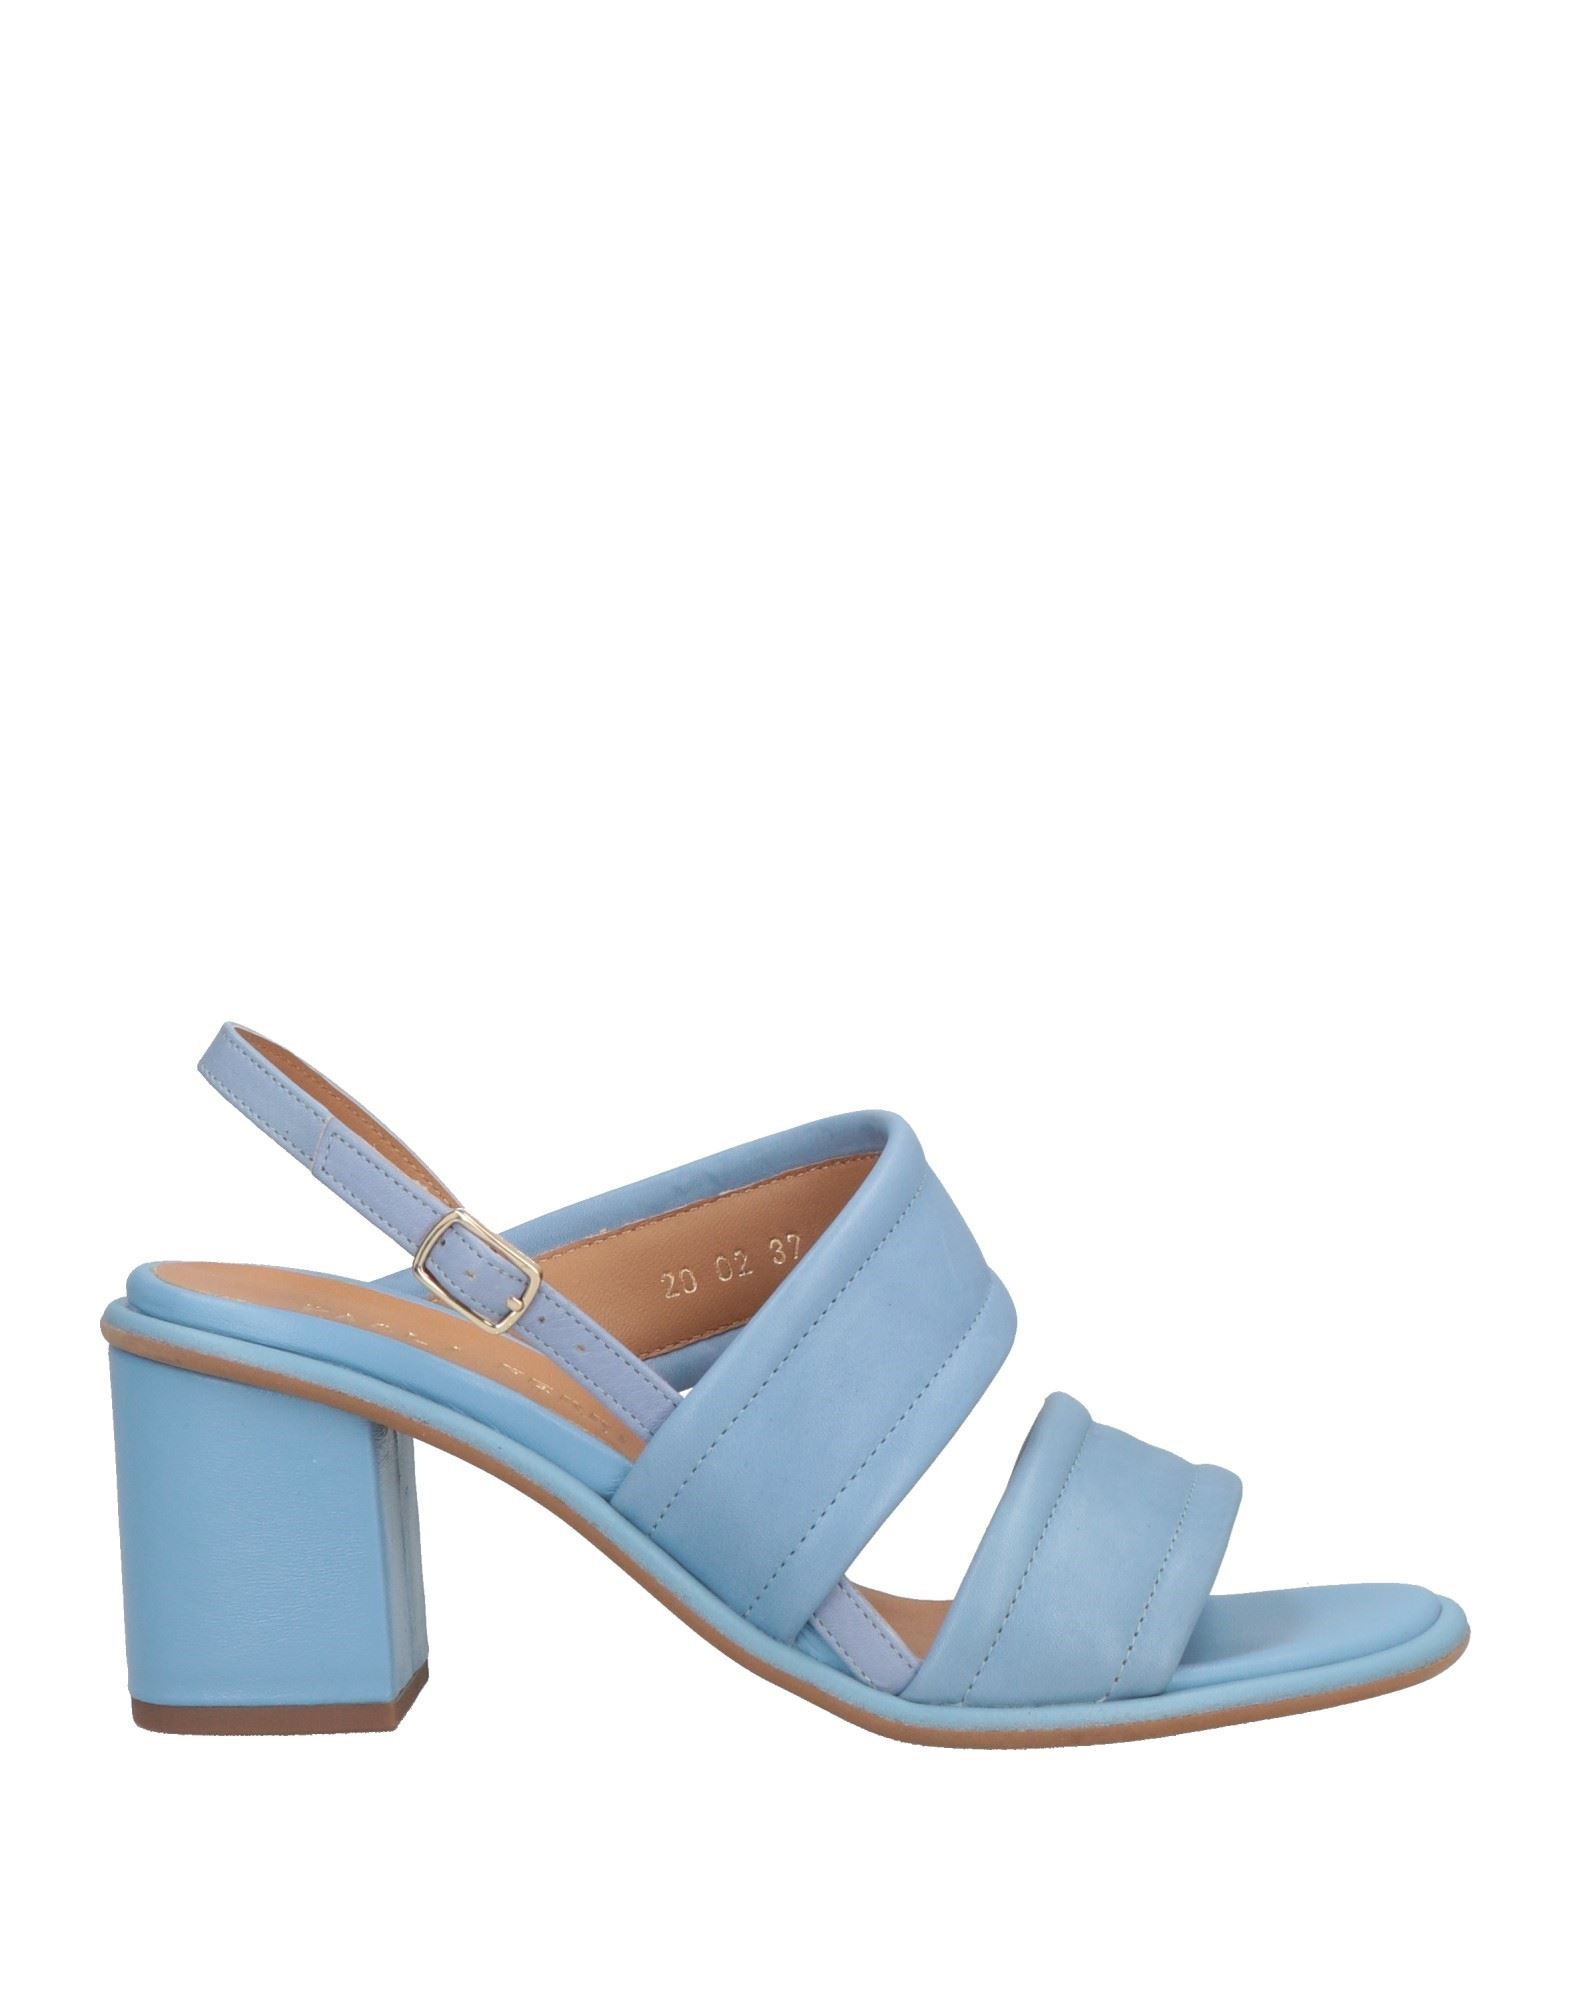 Paola Ferri Sandals In Blue